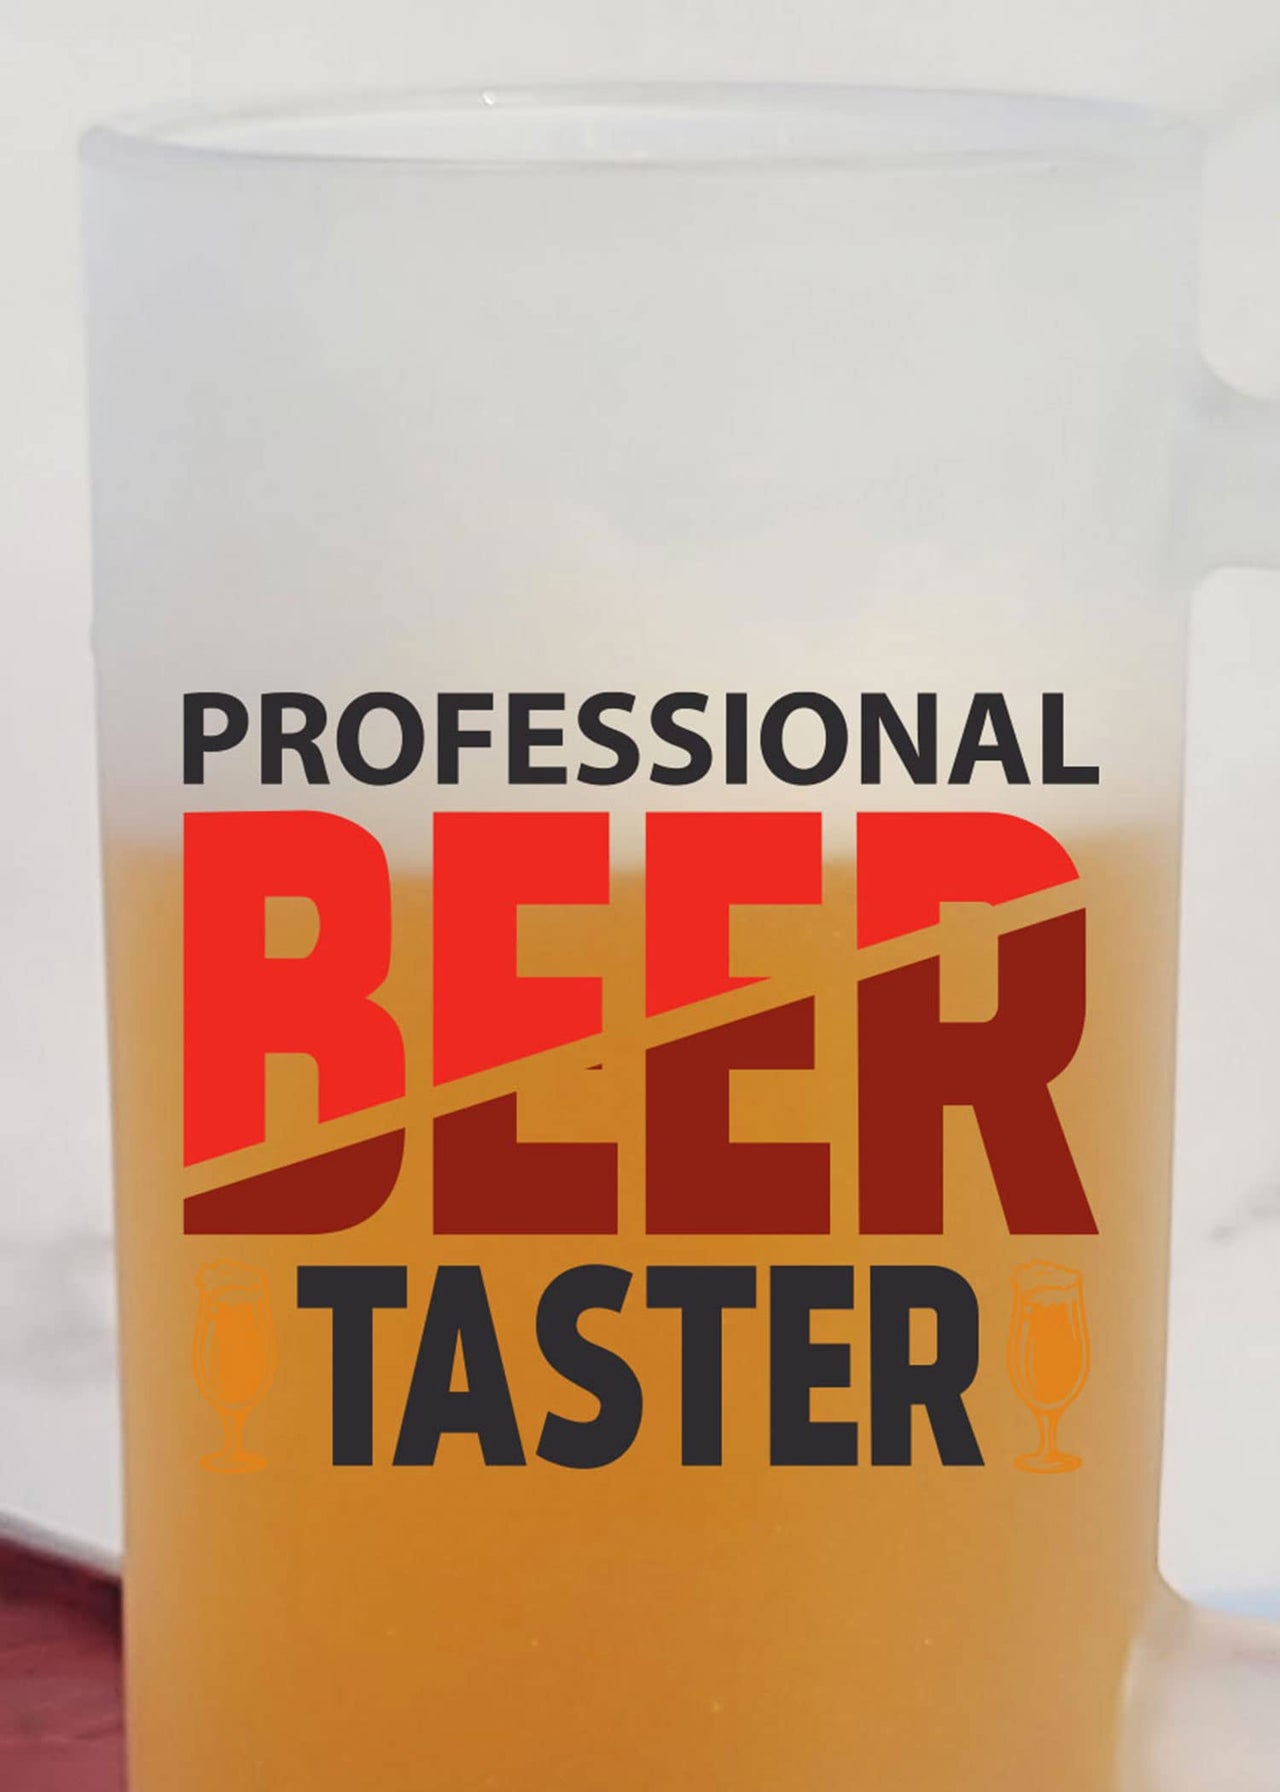 Professional Beer Taster - Frosted Beer Mug